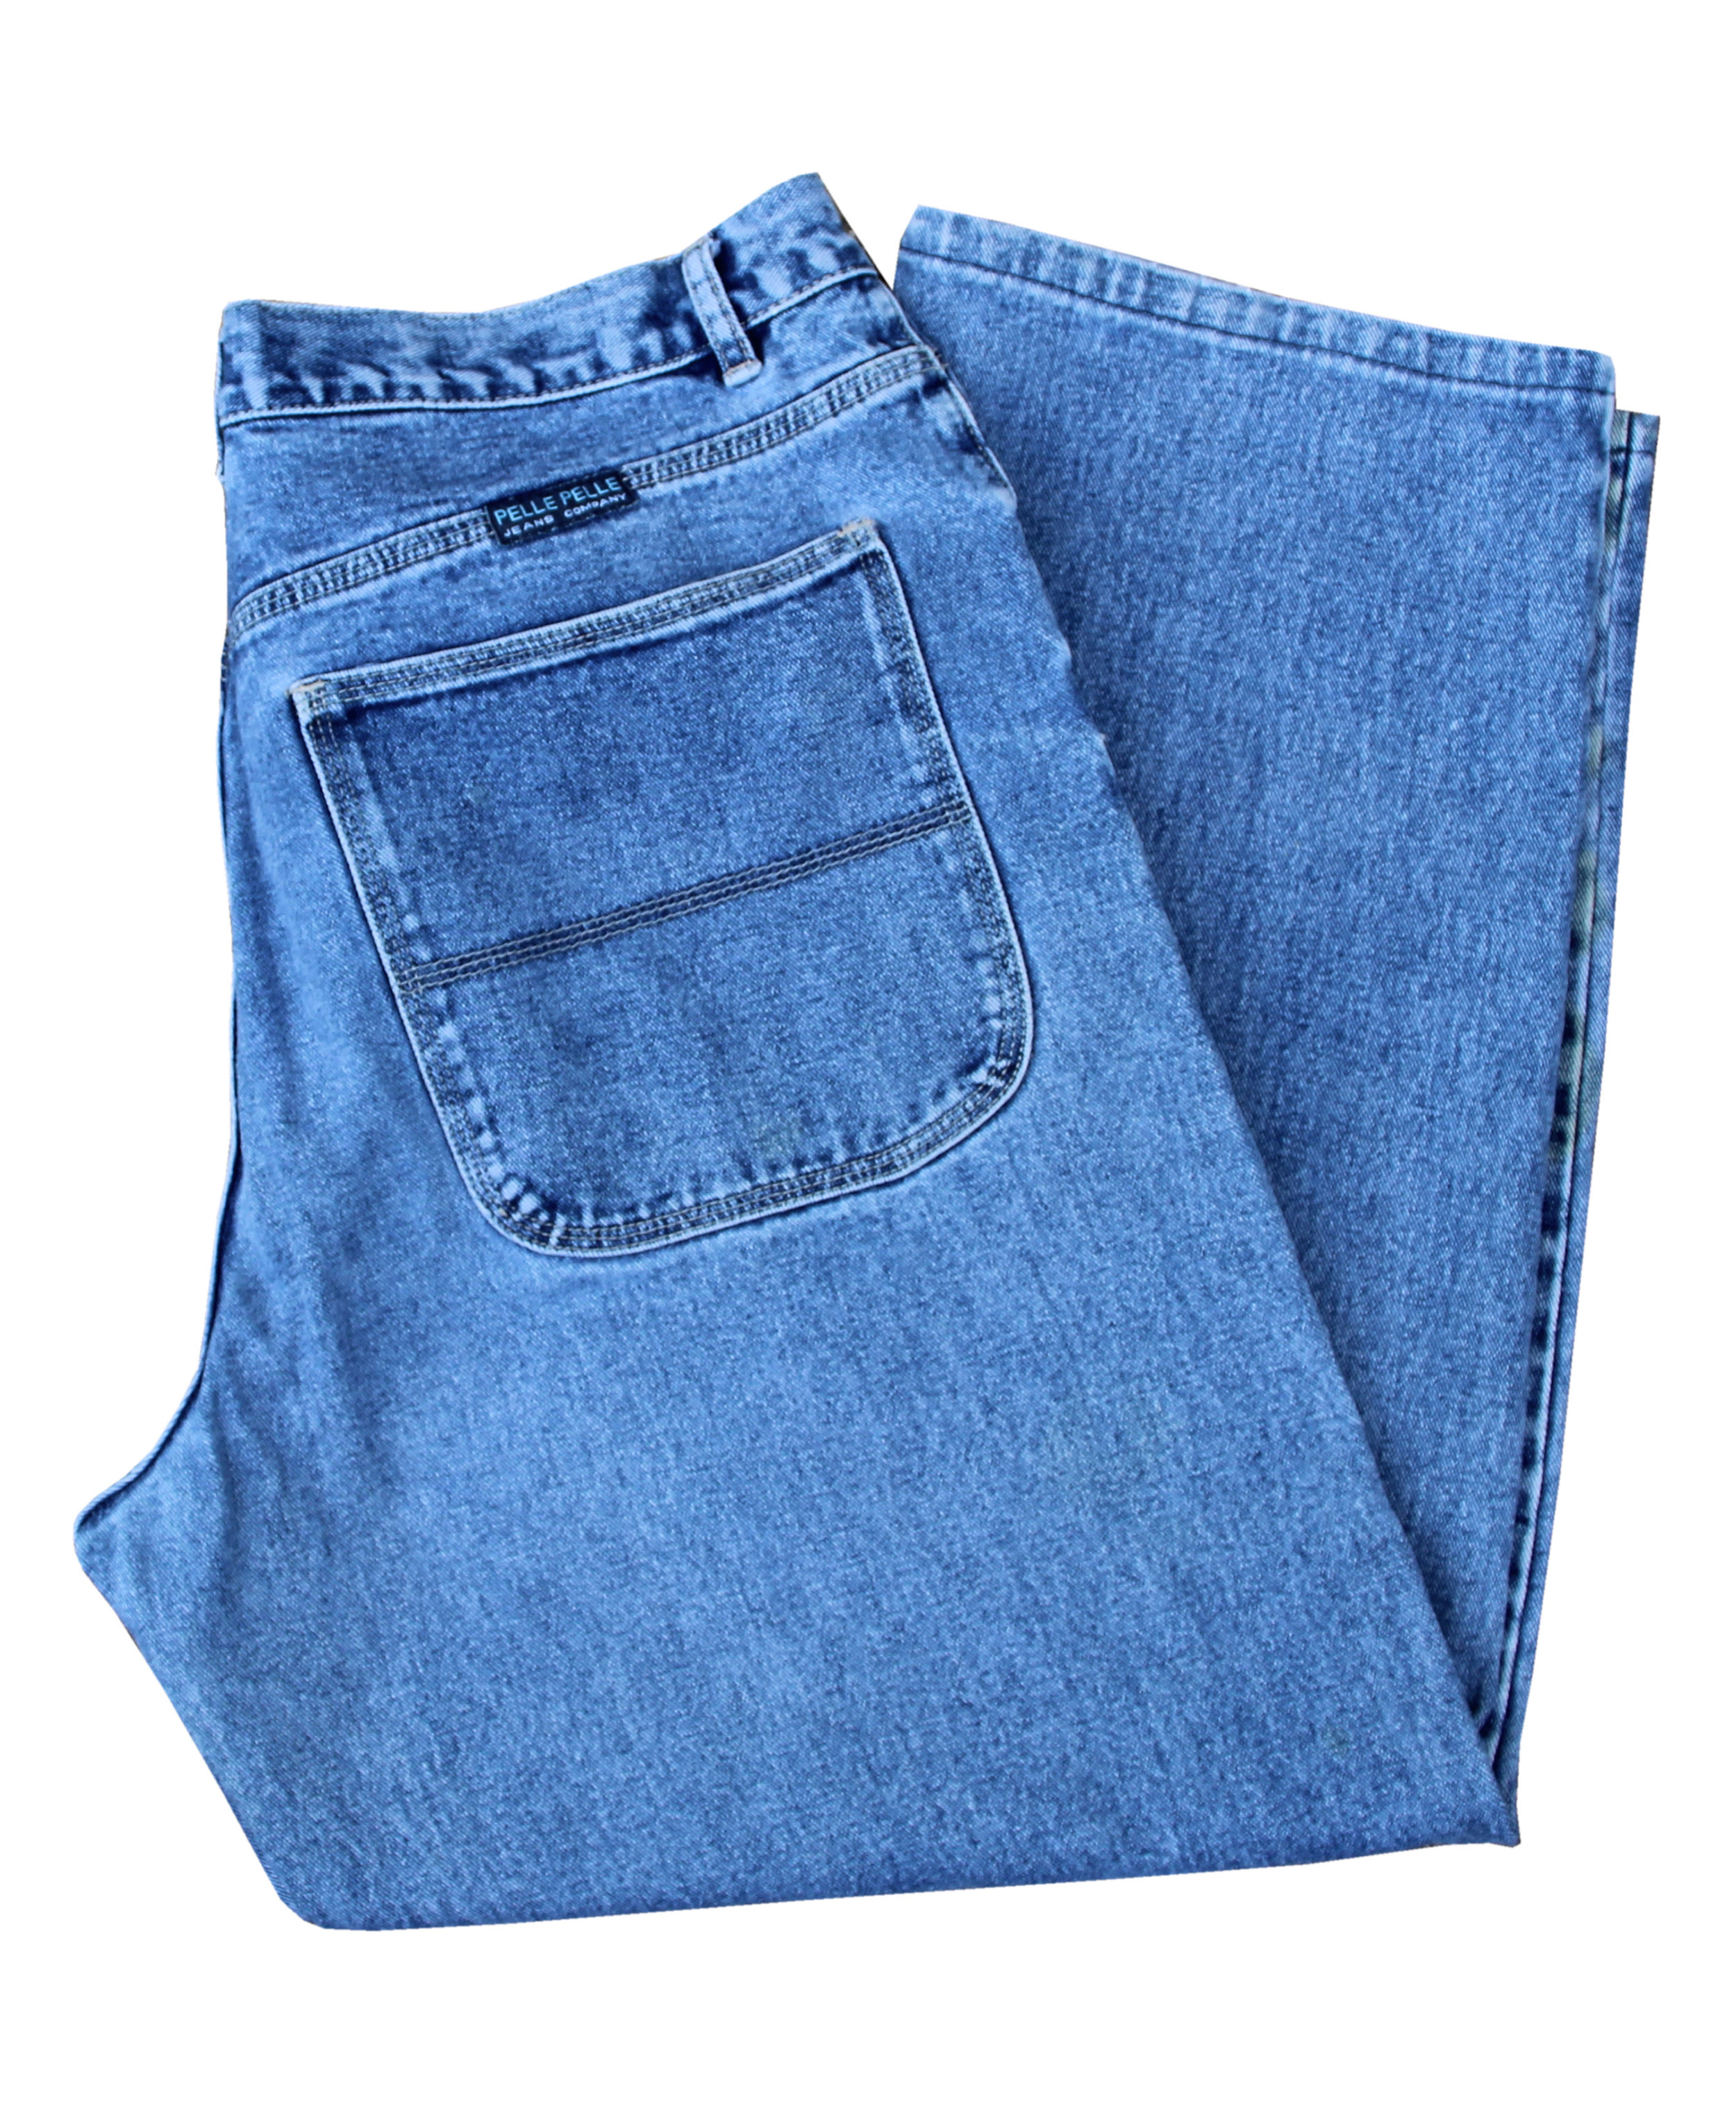 Vintage Pelle Pelle Carpenter Jeans (Size 38 x 30) — Roots